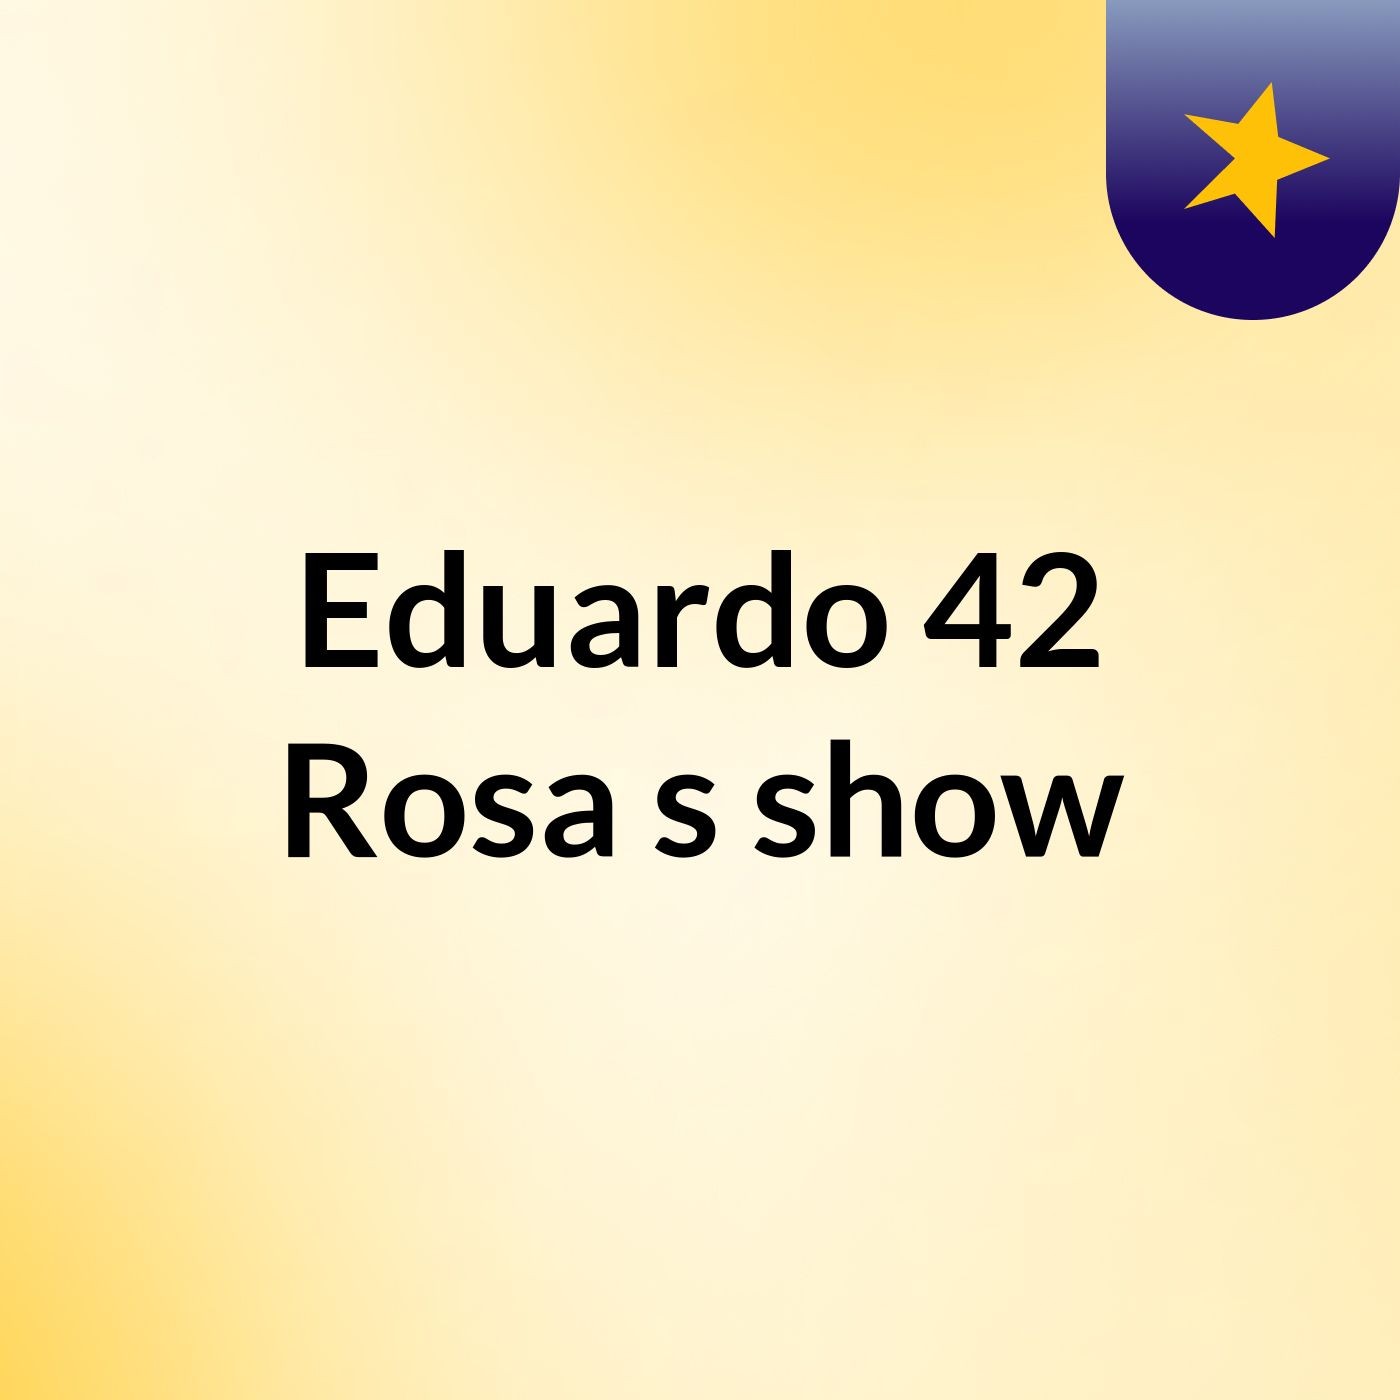 Eduardo 42 Rosa's show